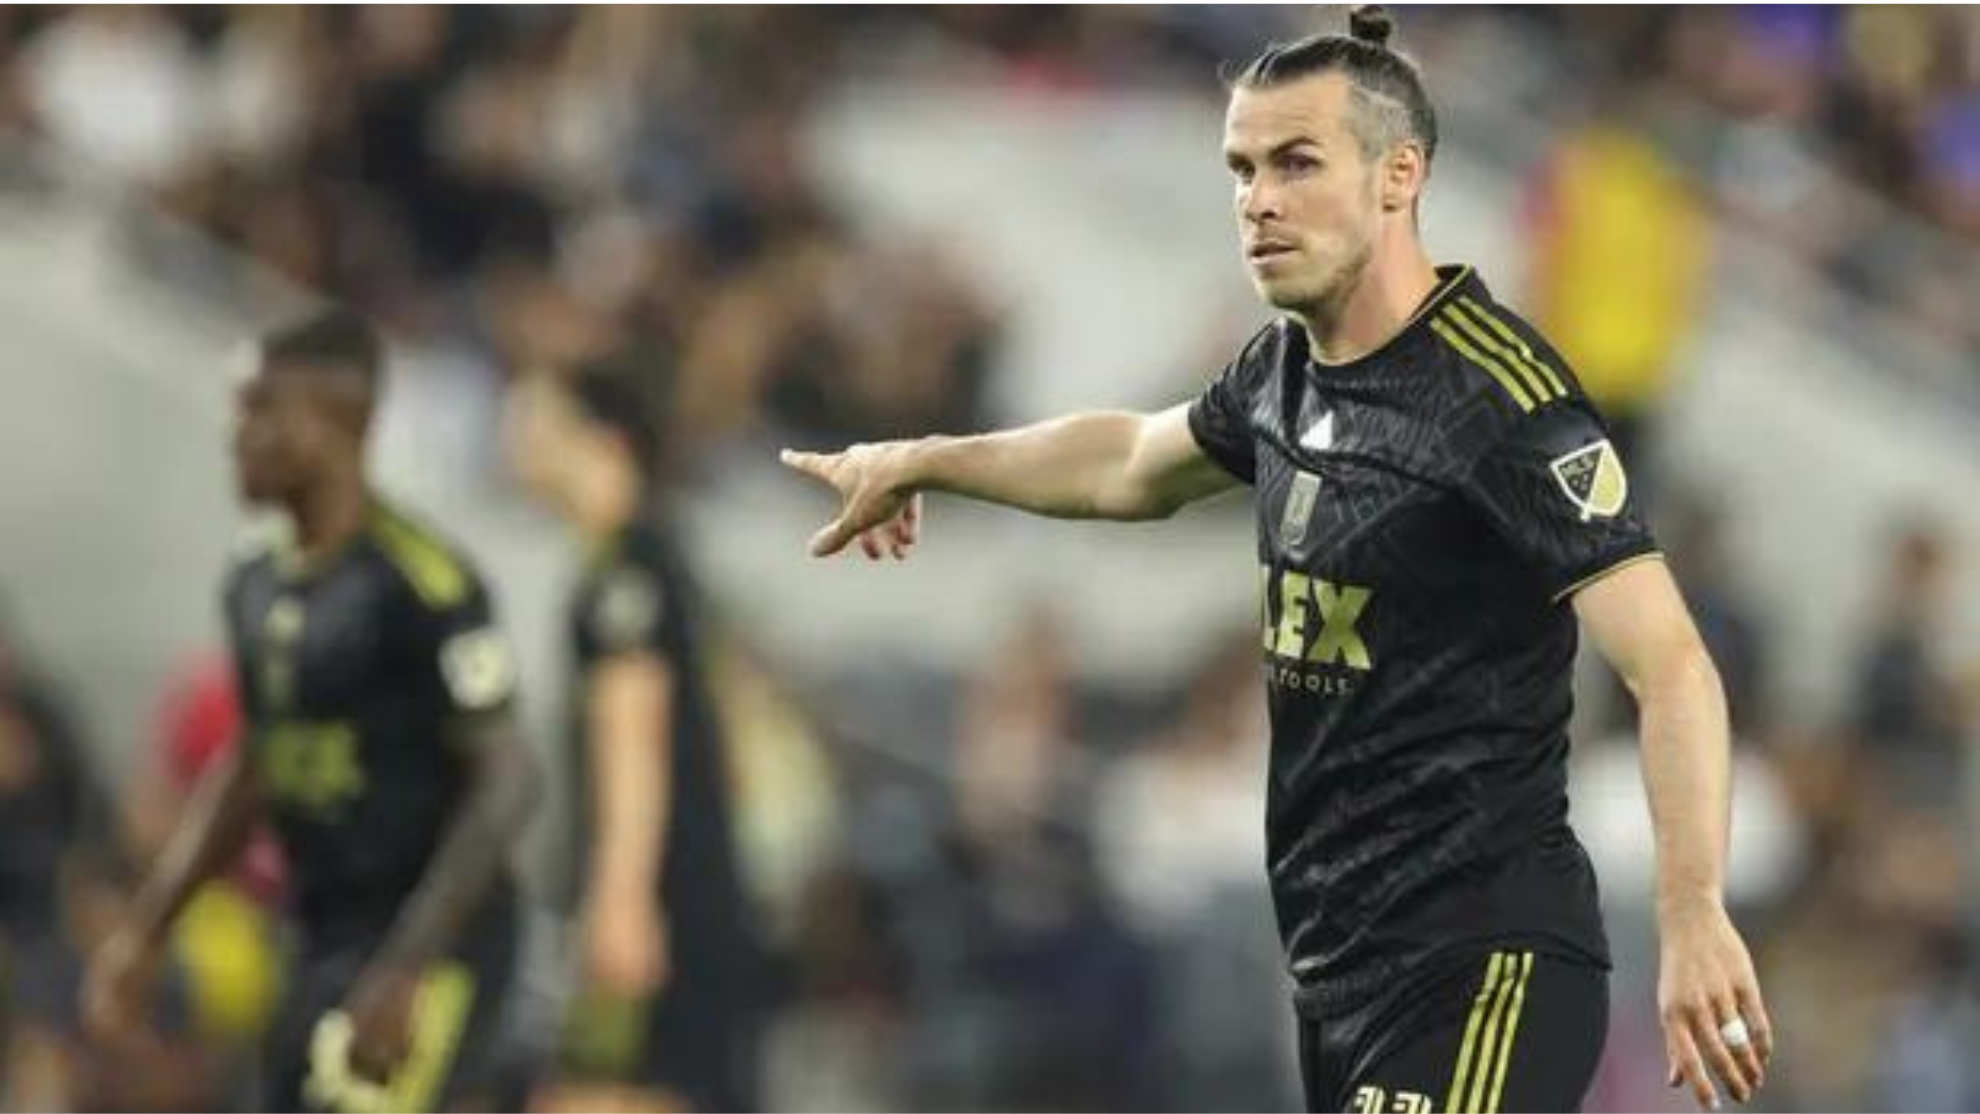 El bajn de Gareth Bale: seis partidos consecutivos sin ver puerta